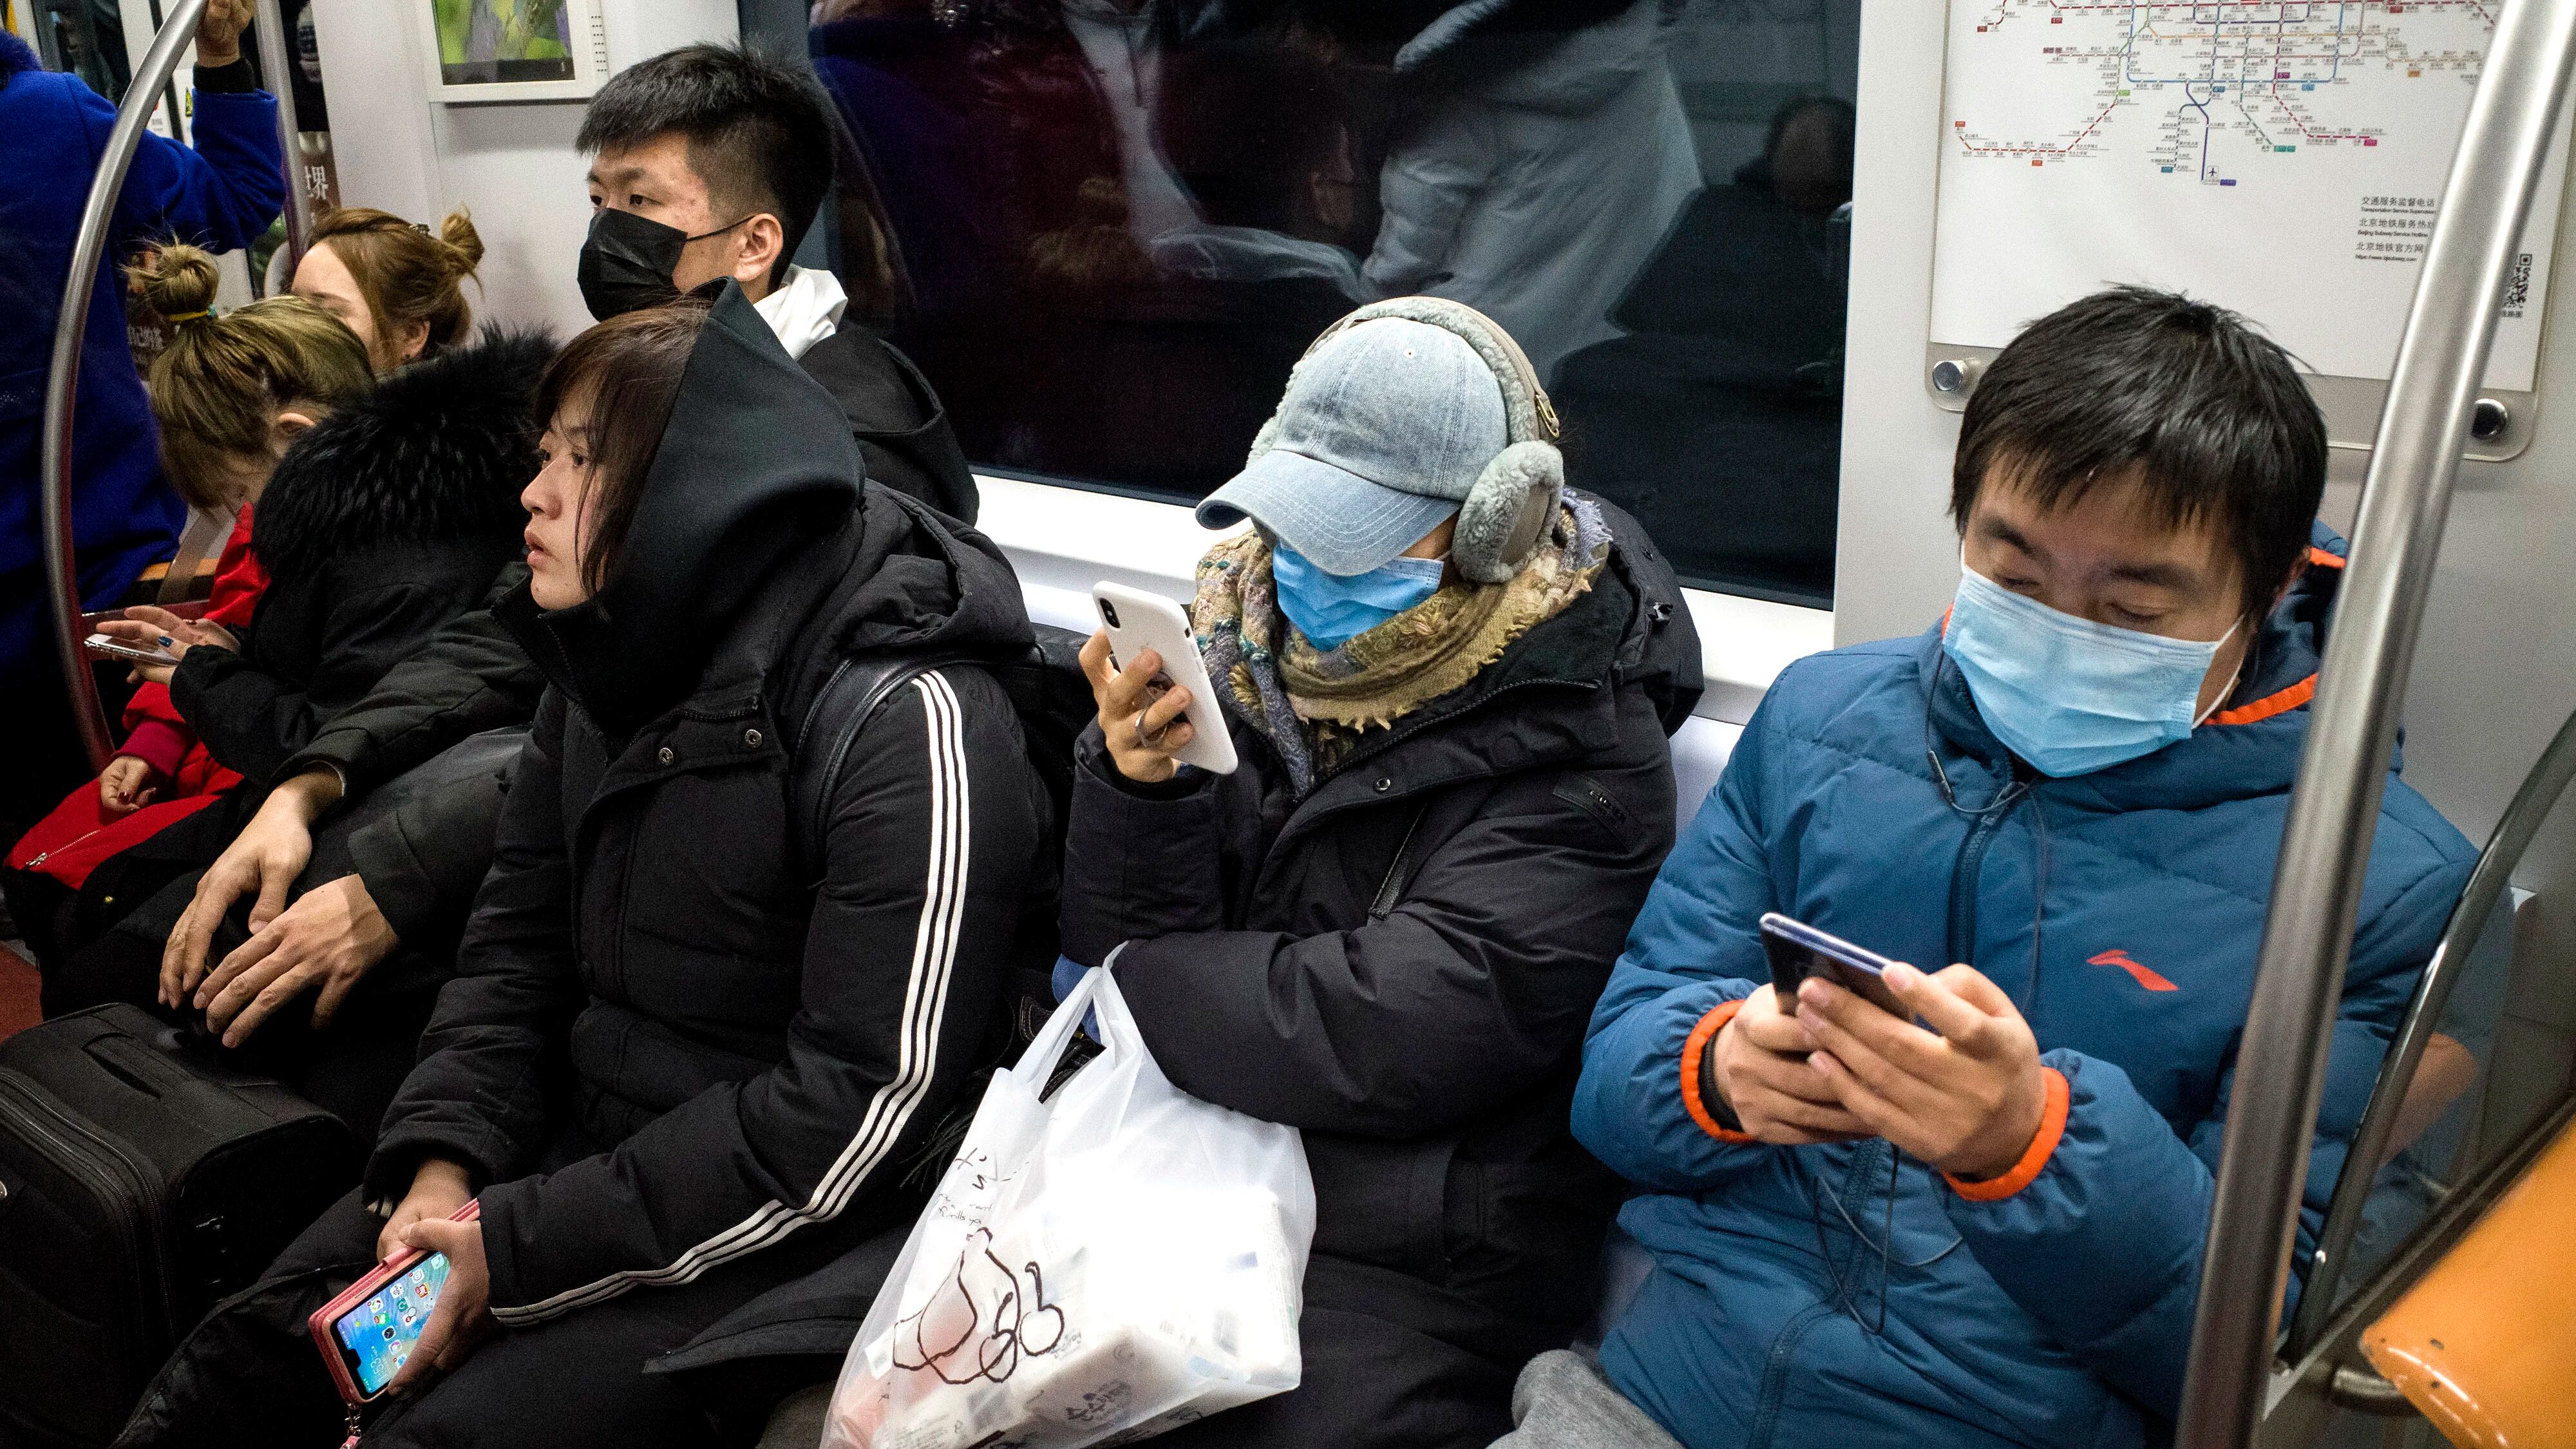 Los pasajeros del metro usan máscaras protectoras en Beijing el 21 de enero de 2020. - El número de muertos por un nuevo virus de China que es transmisible entre humanos aumentó a seis, dijo el alcalde de Wuhan en una entrevista con la cadena estatal CCTV el 21 de enero. La Organización de la Salud dijo que consideraría declarar una emergencia internacional de salud pública sobre el brote. (Foto por NOEL CELIS / AFP)